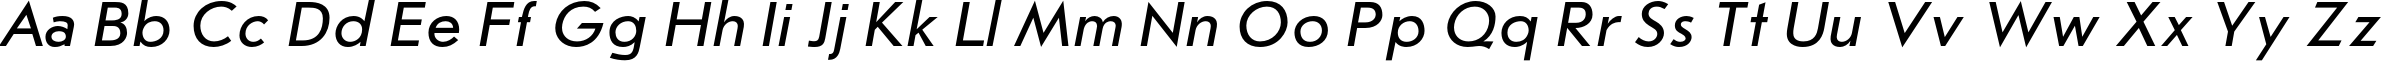 Пример написания английского алфавита шрифтом JournalSansC Italic